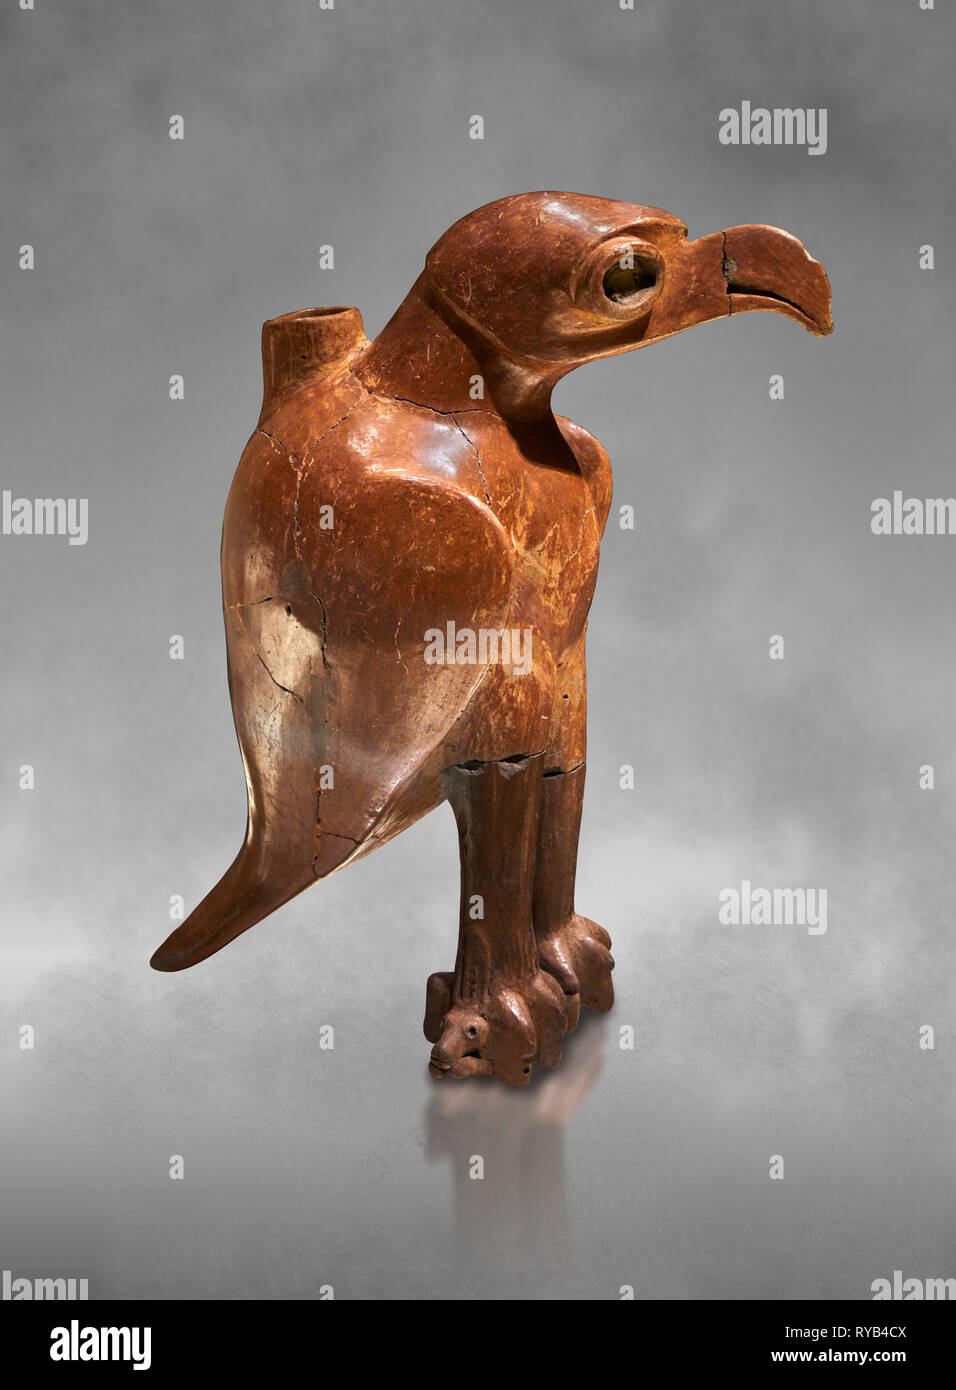 L'âge de bronze en forme de navire Anatolian eagle rituel - 19e au 17e siècle avant J.-C. - Kültepe Kanesh - Musée des civilisations anatoliennes, Ankara, Turquie. Banque D'Images